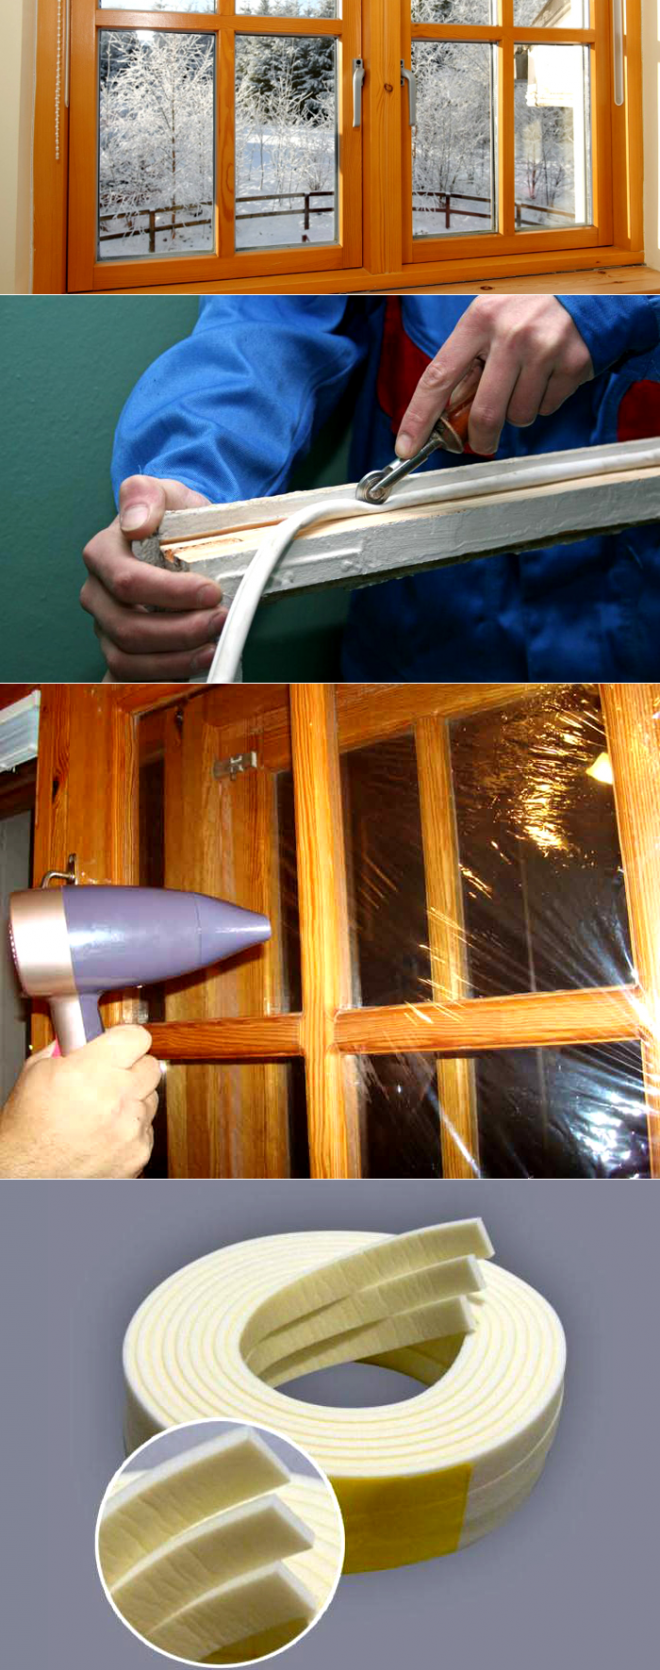 Утепление деревянных окон своими руками, как правильно утеплить старые окна на зиму, чтобы не дуло Утепление окон бумагой, ватой, пенопластом, лентой, пленкой, герметиком, пеной